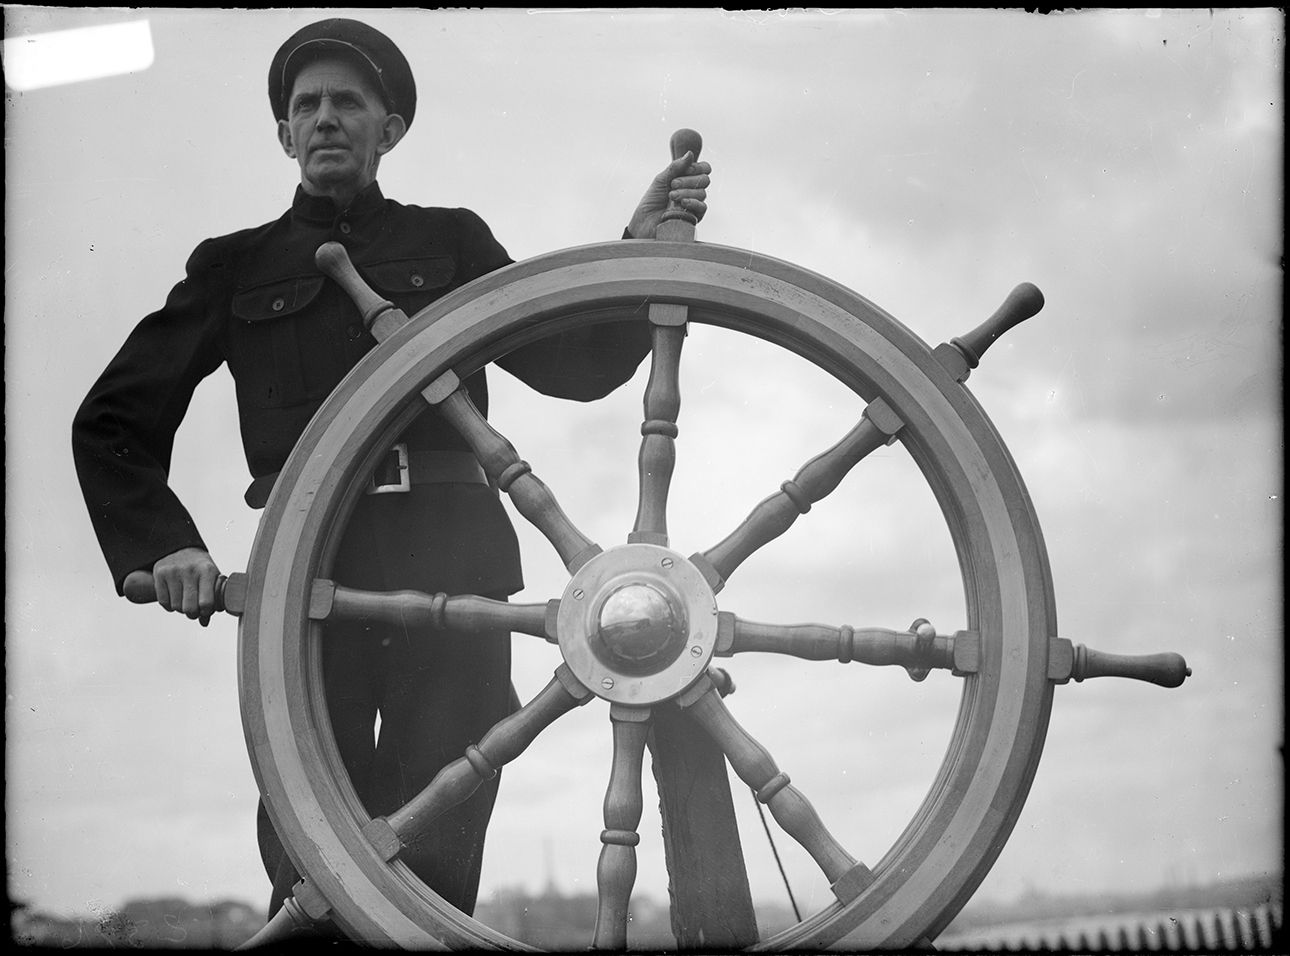 Seaman at the ship's wheel